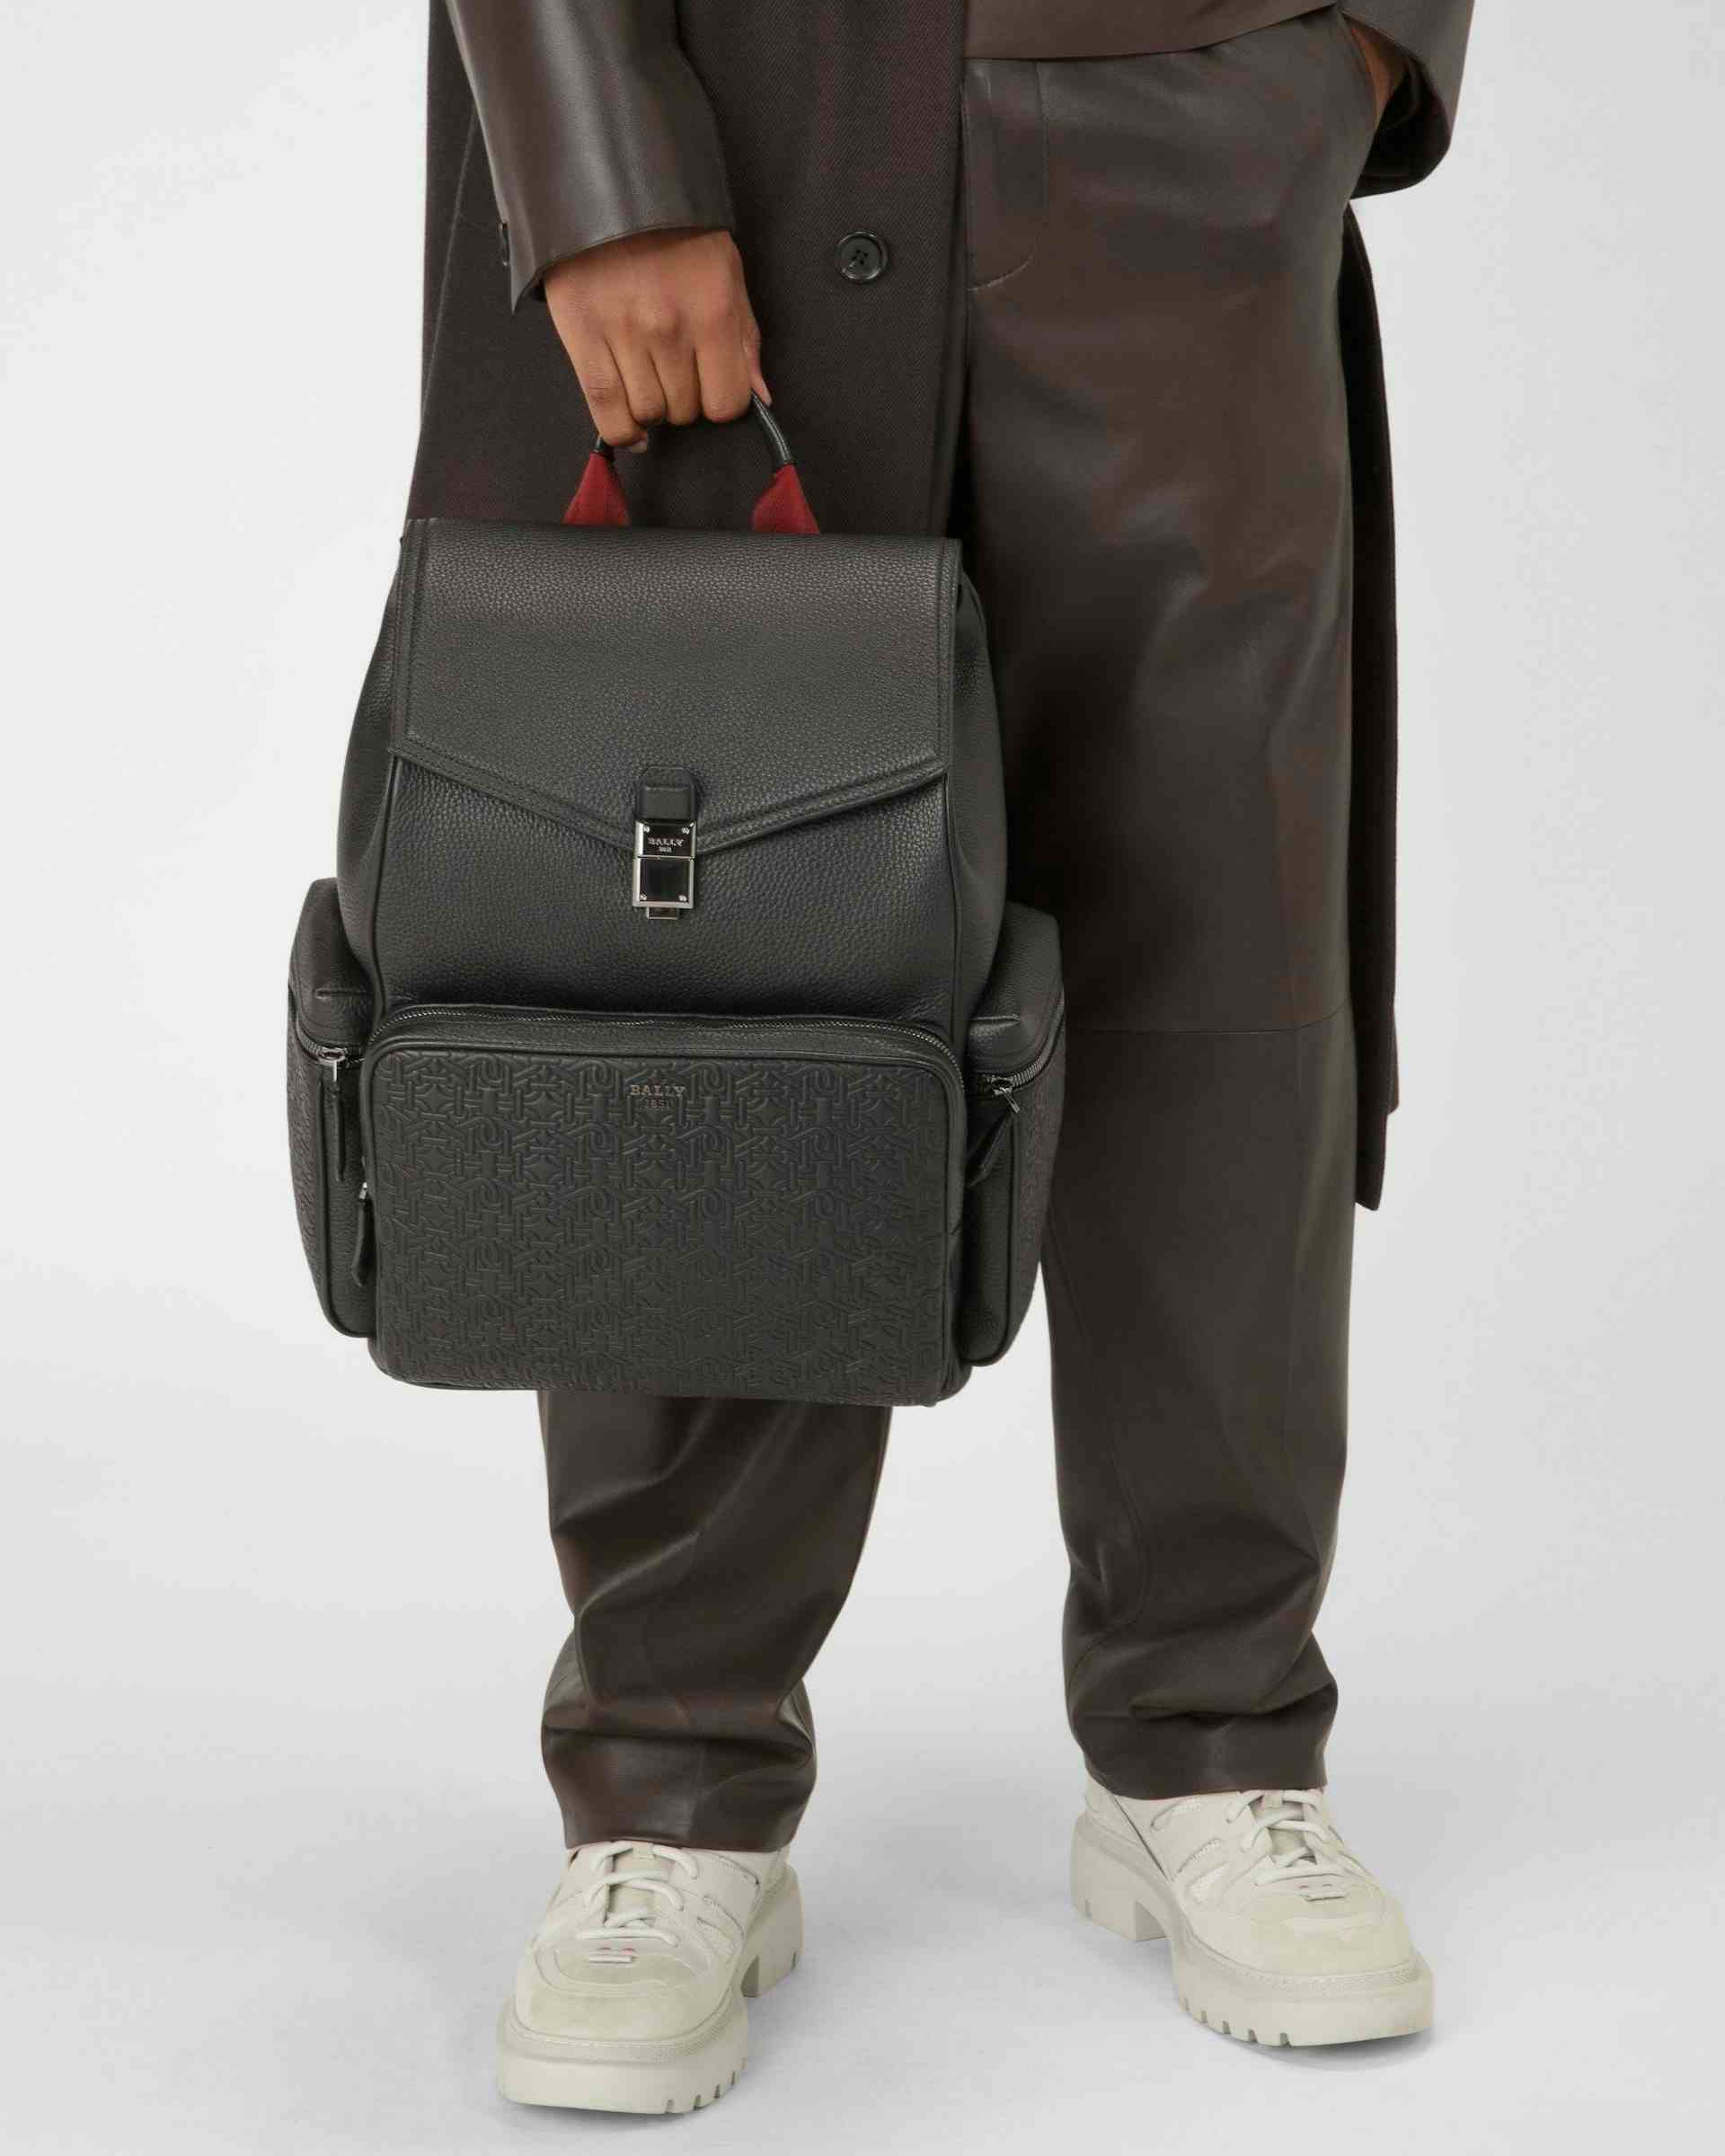 Bahko Leather Backpack In Black - Men's - Bally